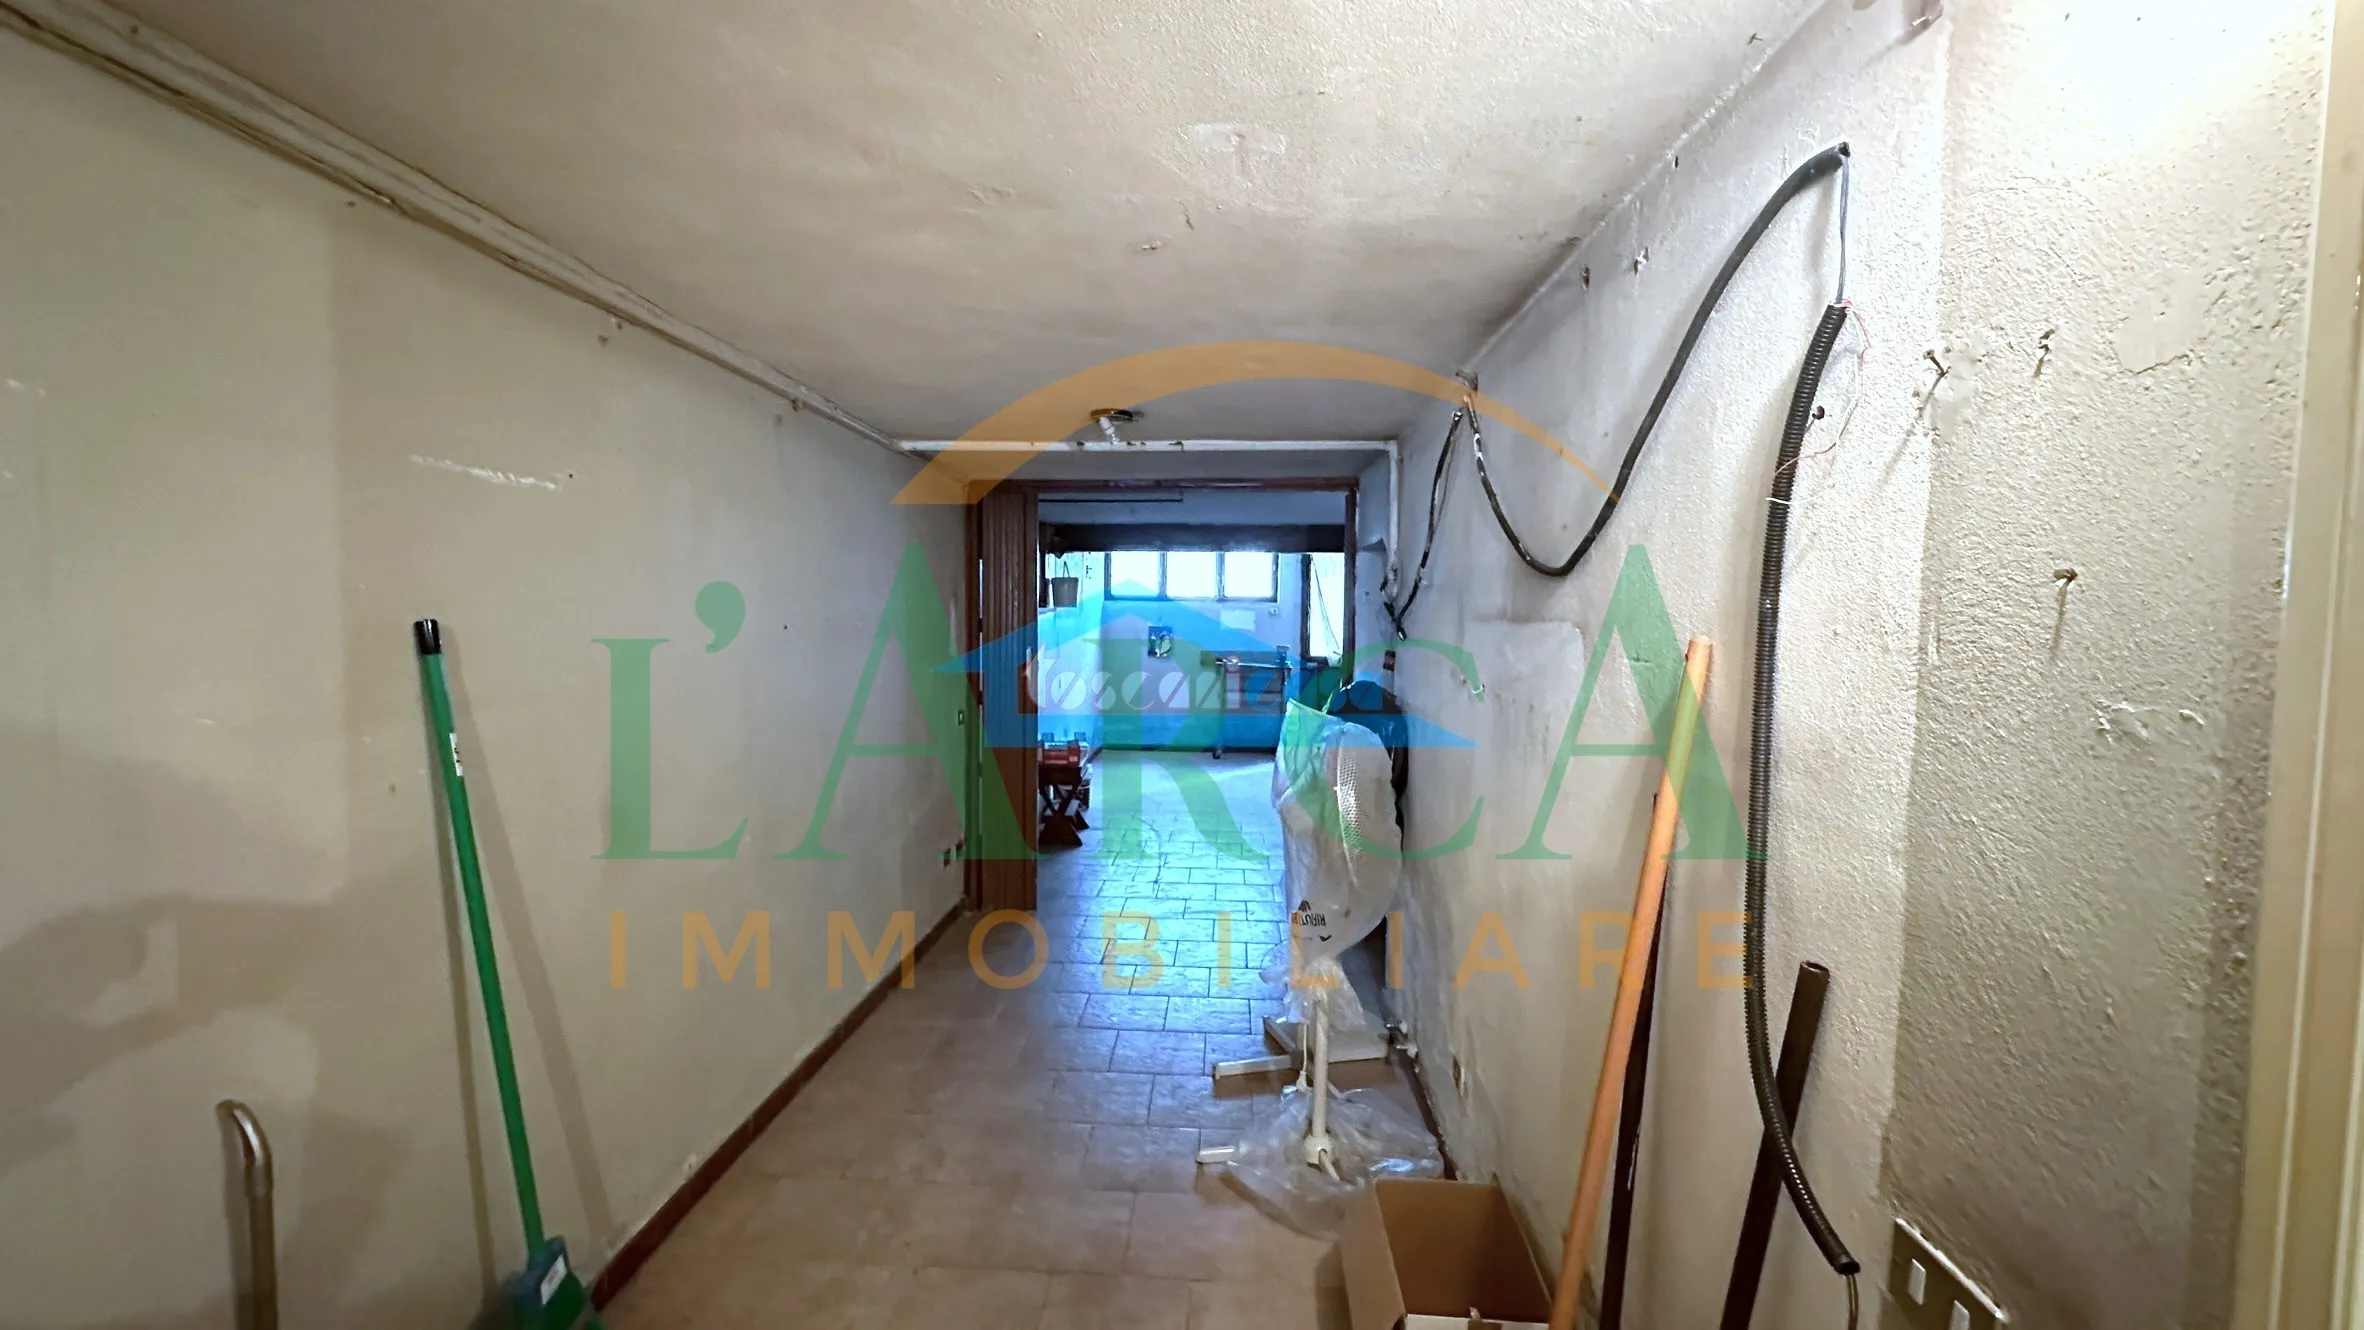 Immagine per Villa a schiera in vendita a Capriolo via Quadri  Seconda  Traversa 26